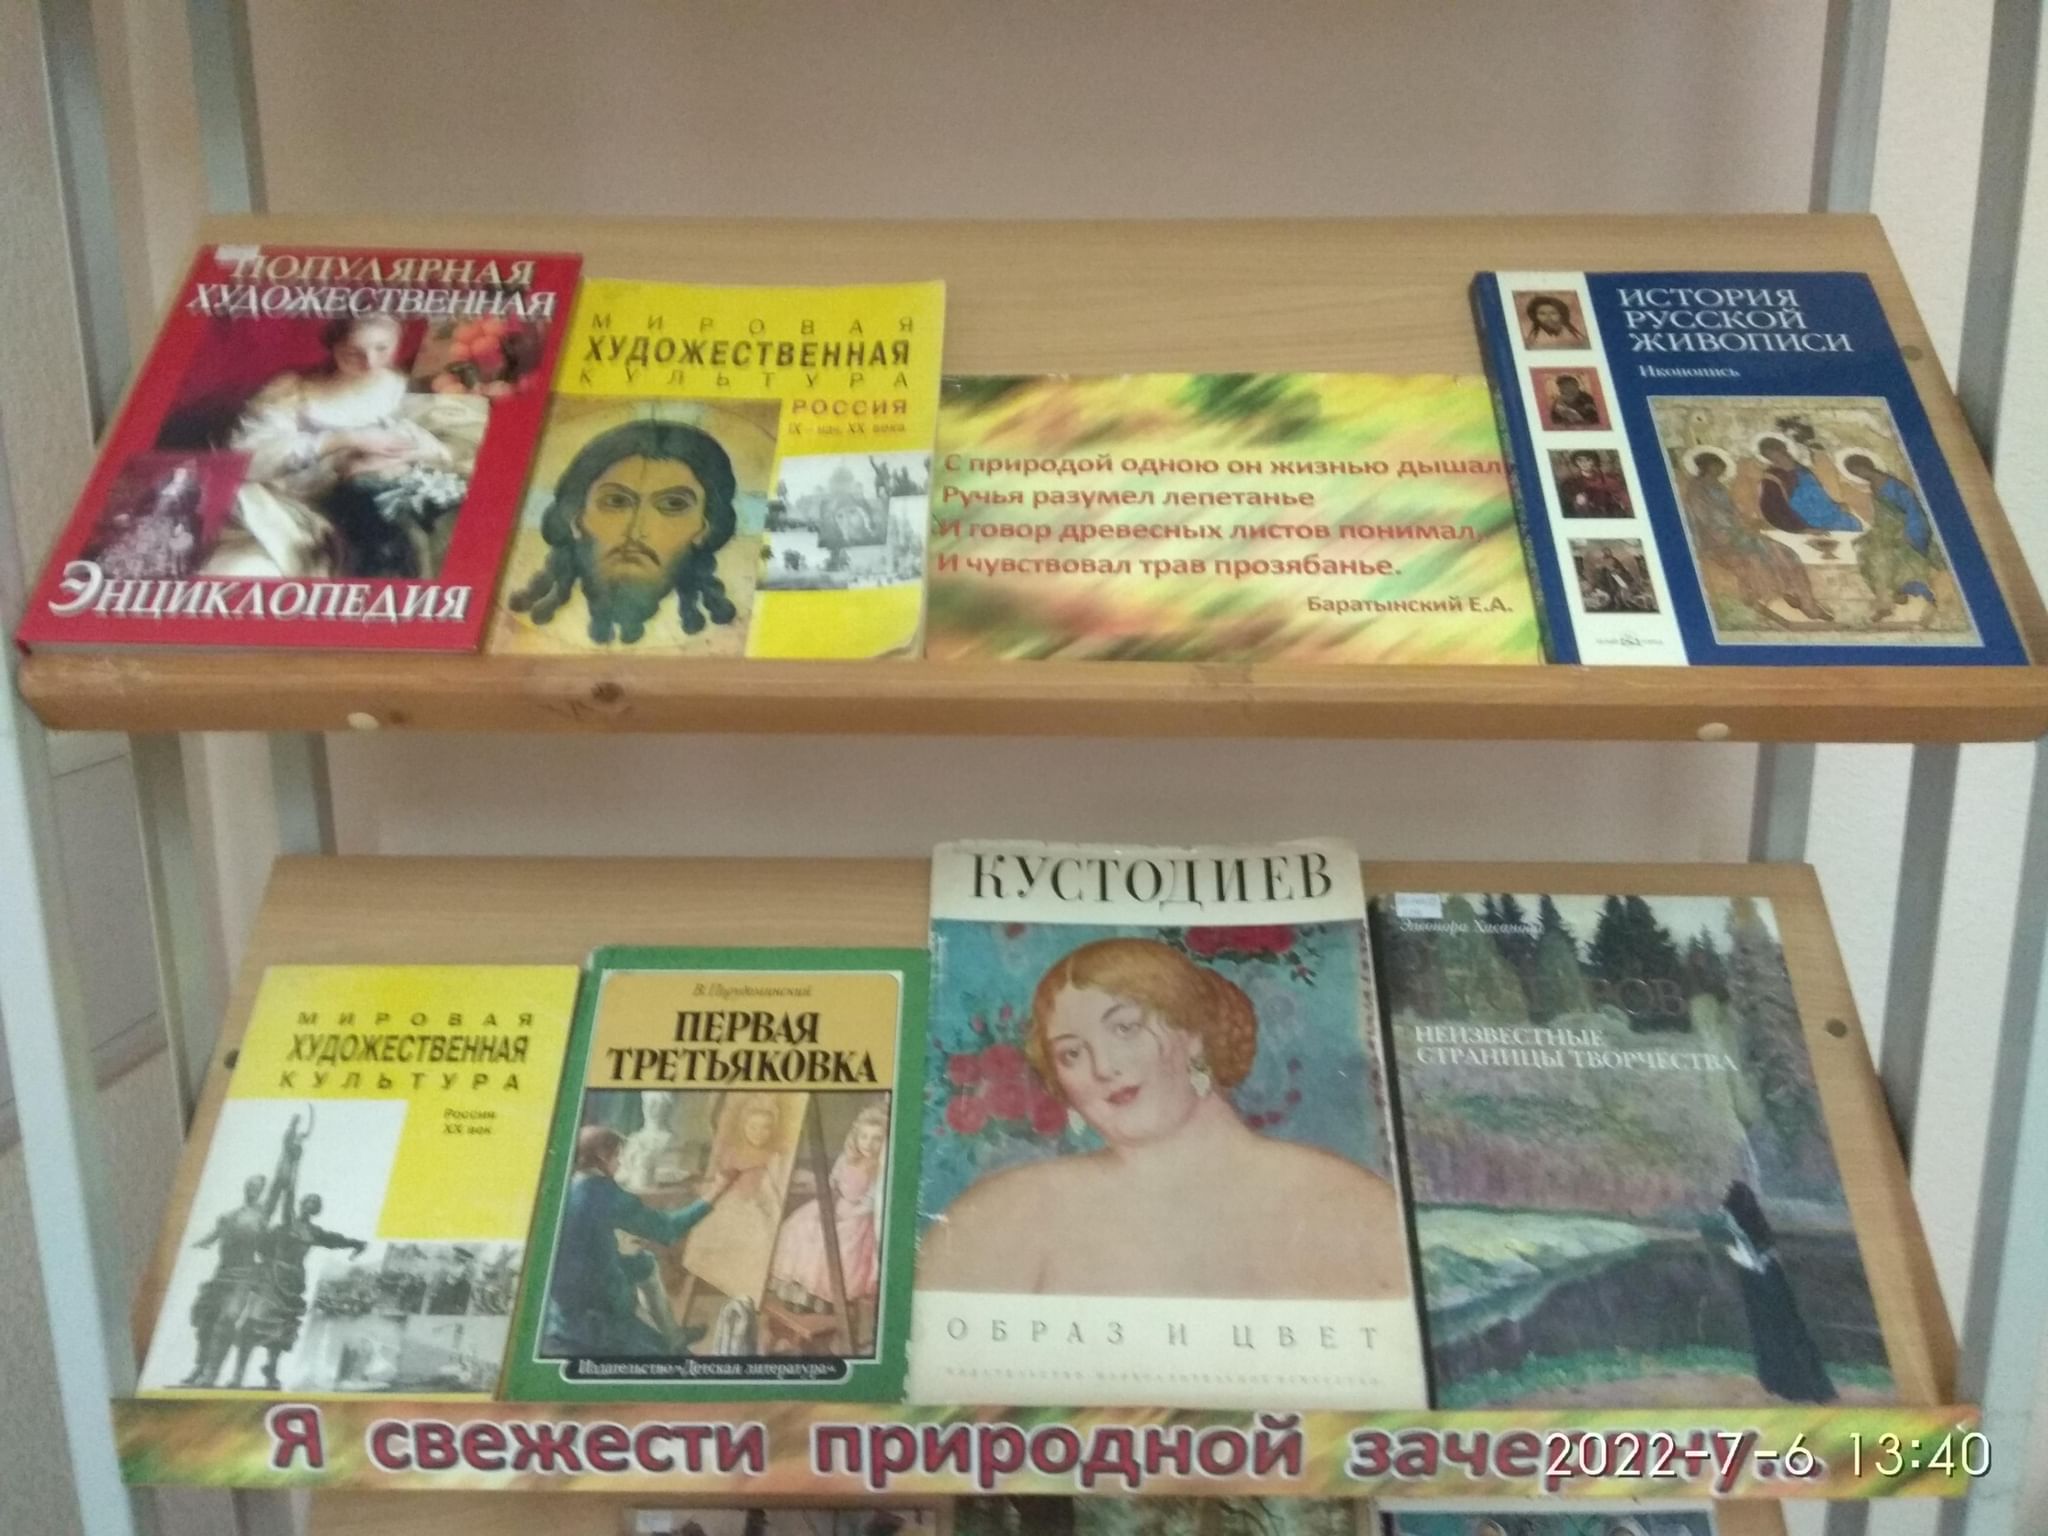 Гоголь книжная выставка в библиотеке название выставки